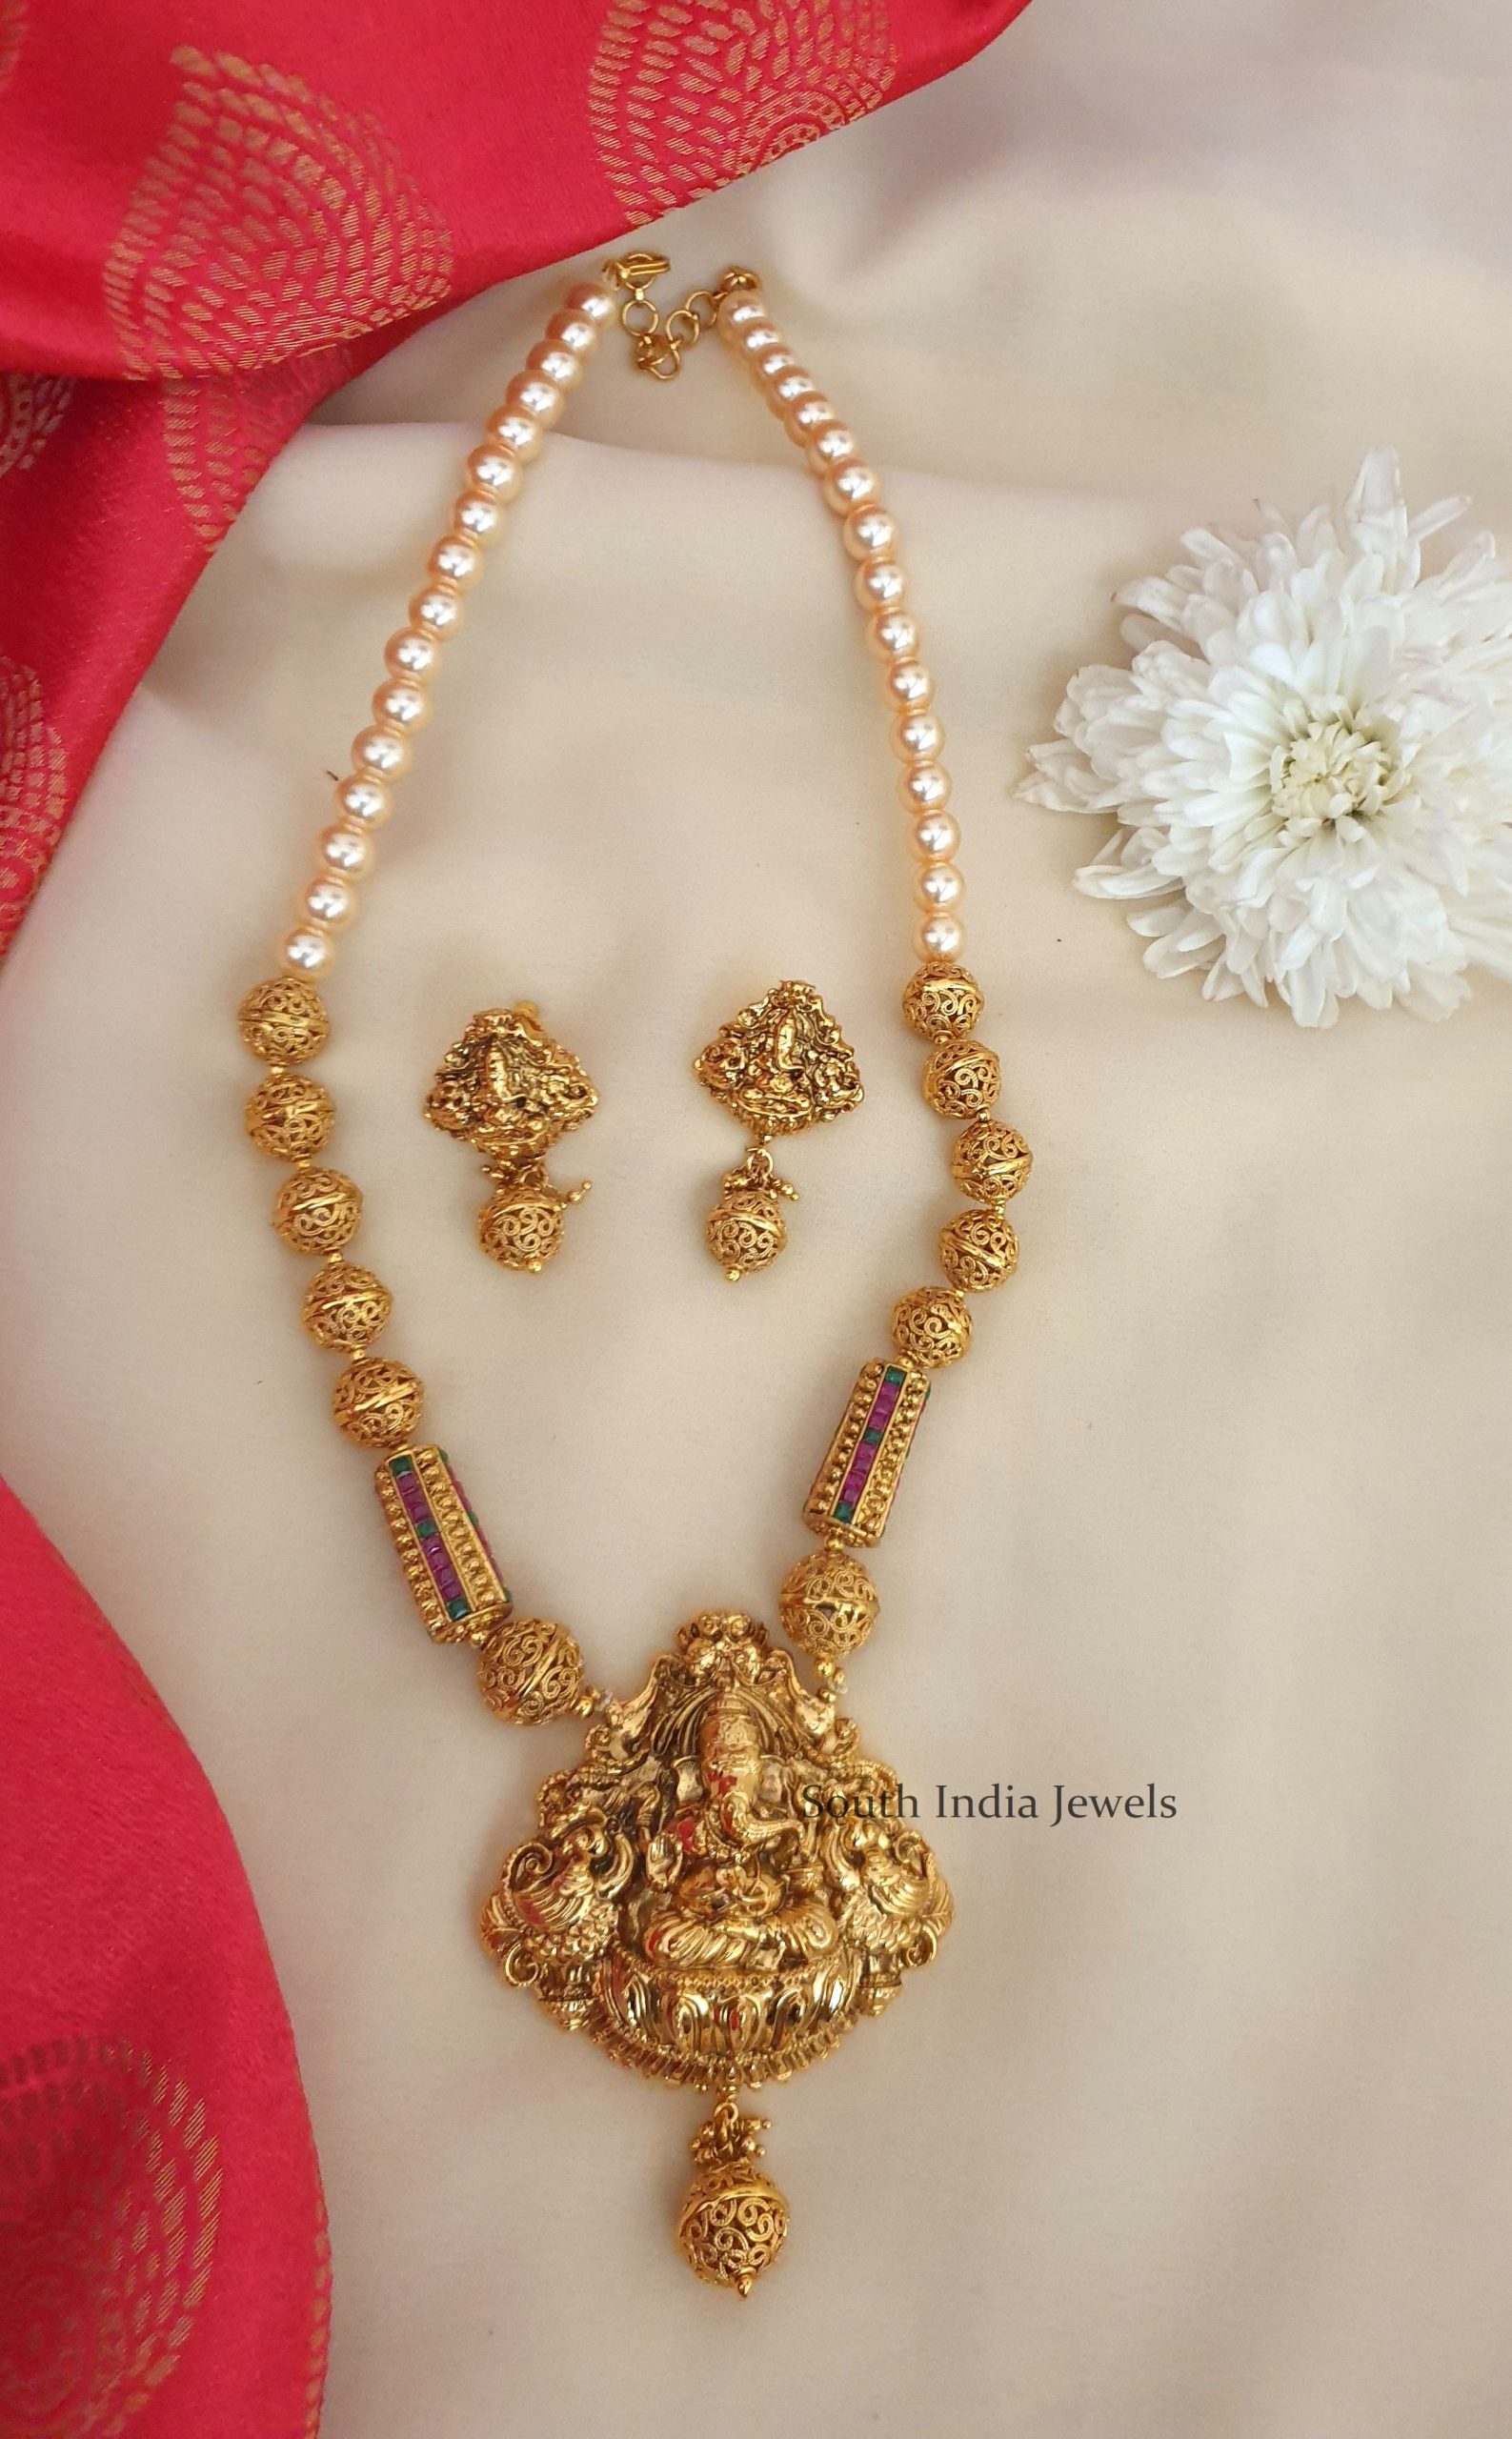 Amazing Ganesh Pendant Necklace